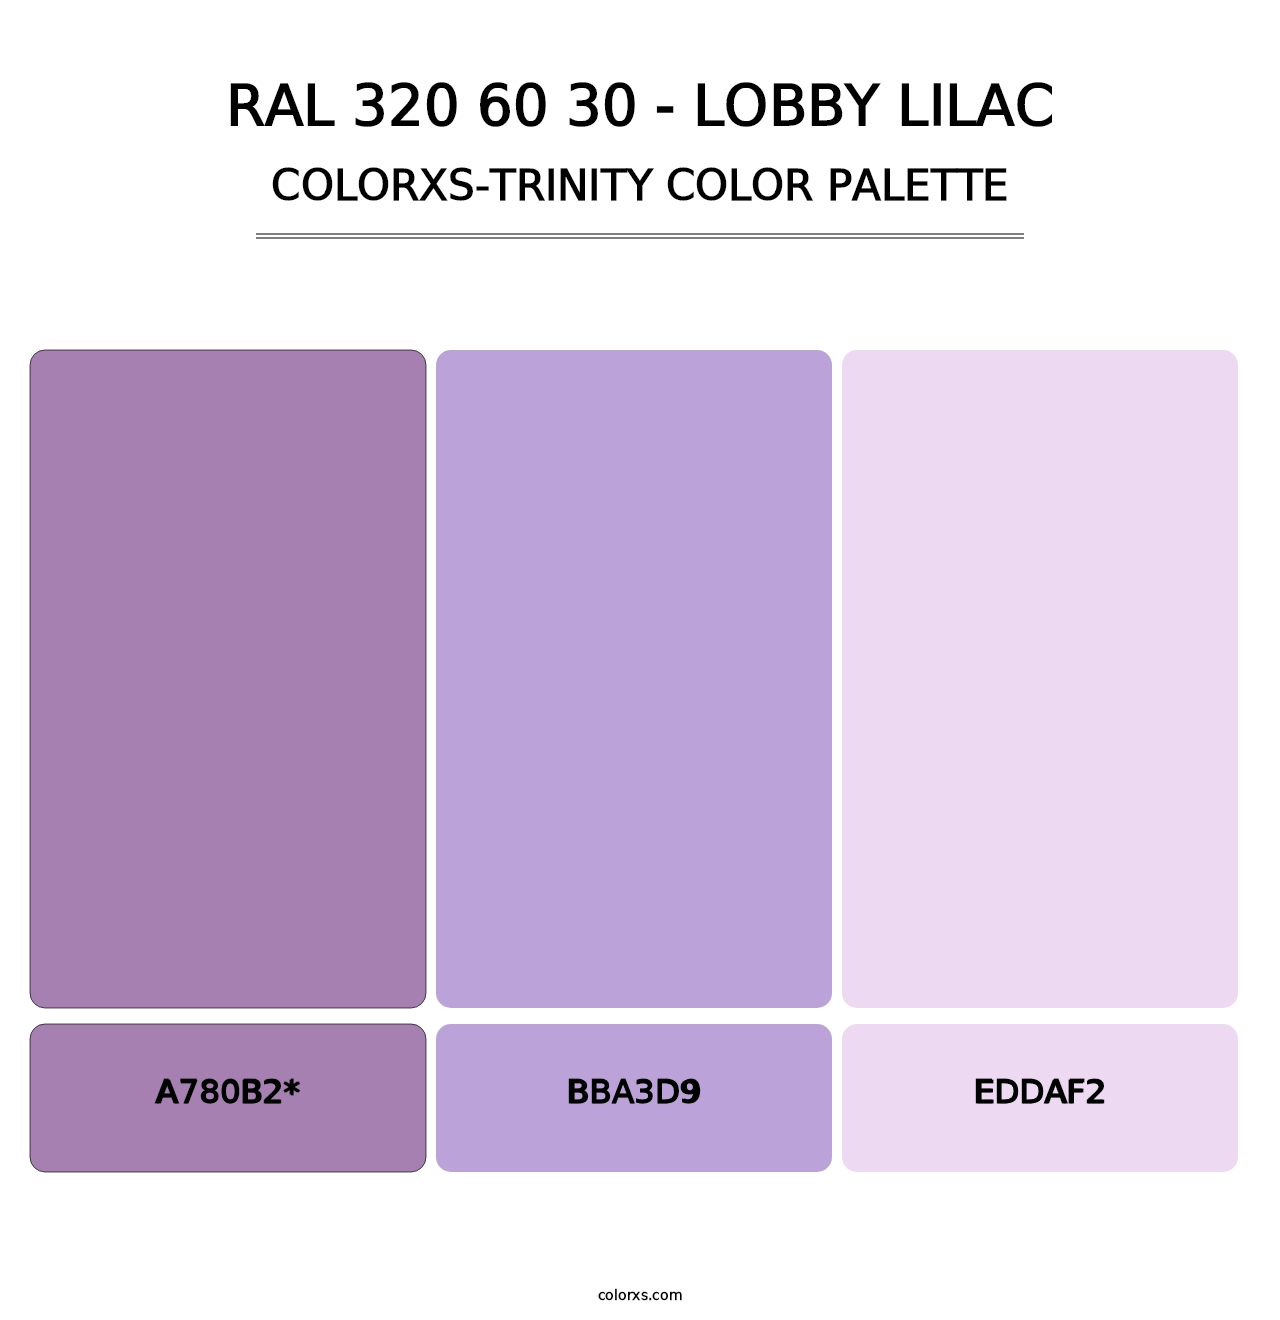 RAL 320 60 30 - Lobby Lilac - Colorxs Trinity Palette